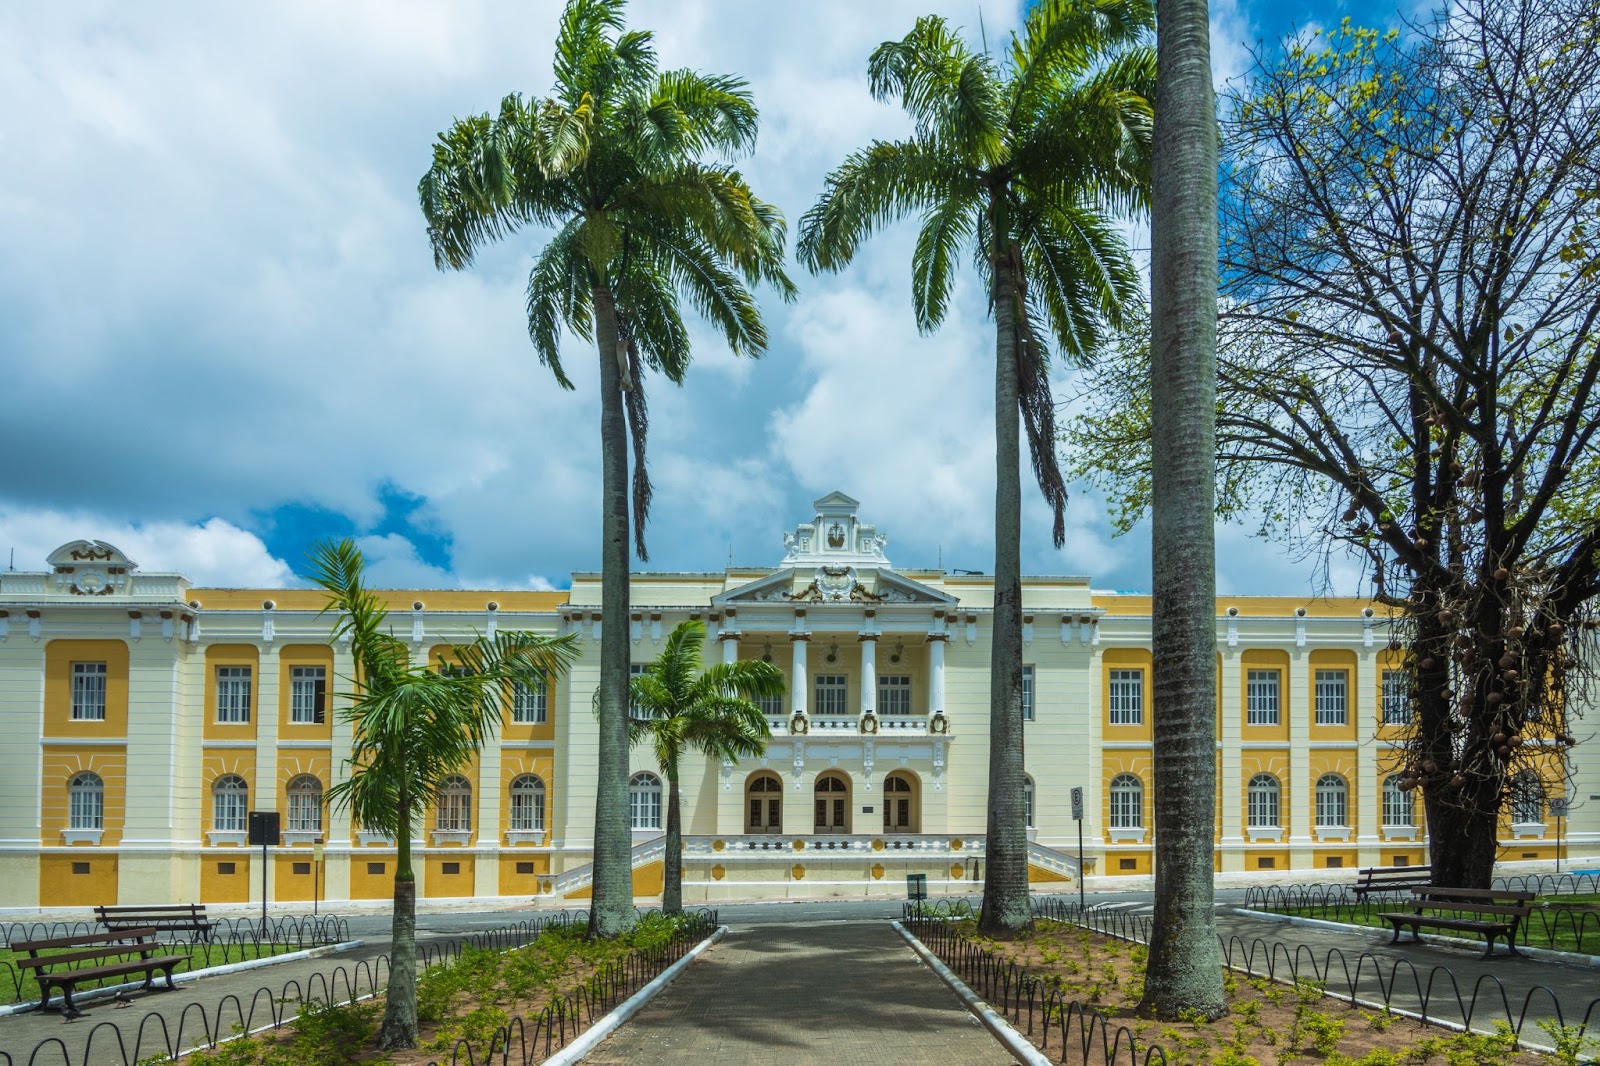 Palácio da Justiça, um dos pontos turísticos do Centro Histórico de João Pessoa. O palacete de dois andares tem uma fachada amarela com detalhes em branco e colunas de estilo neoclássico